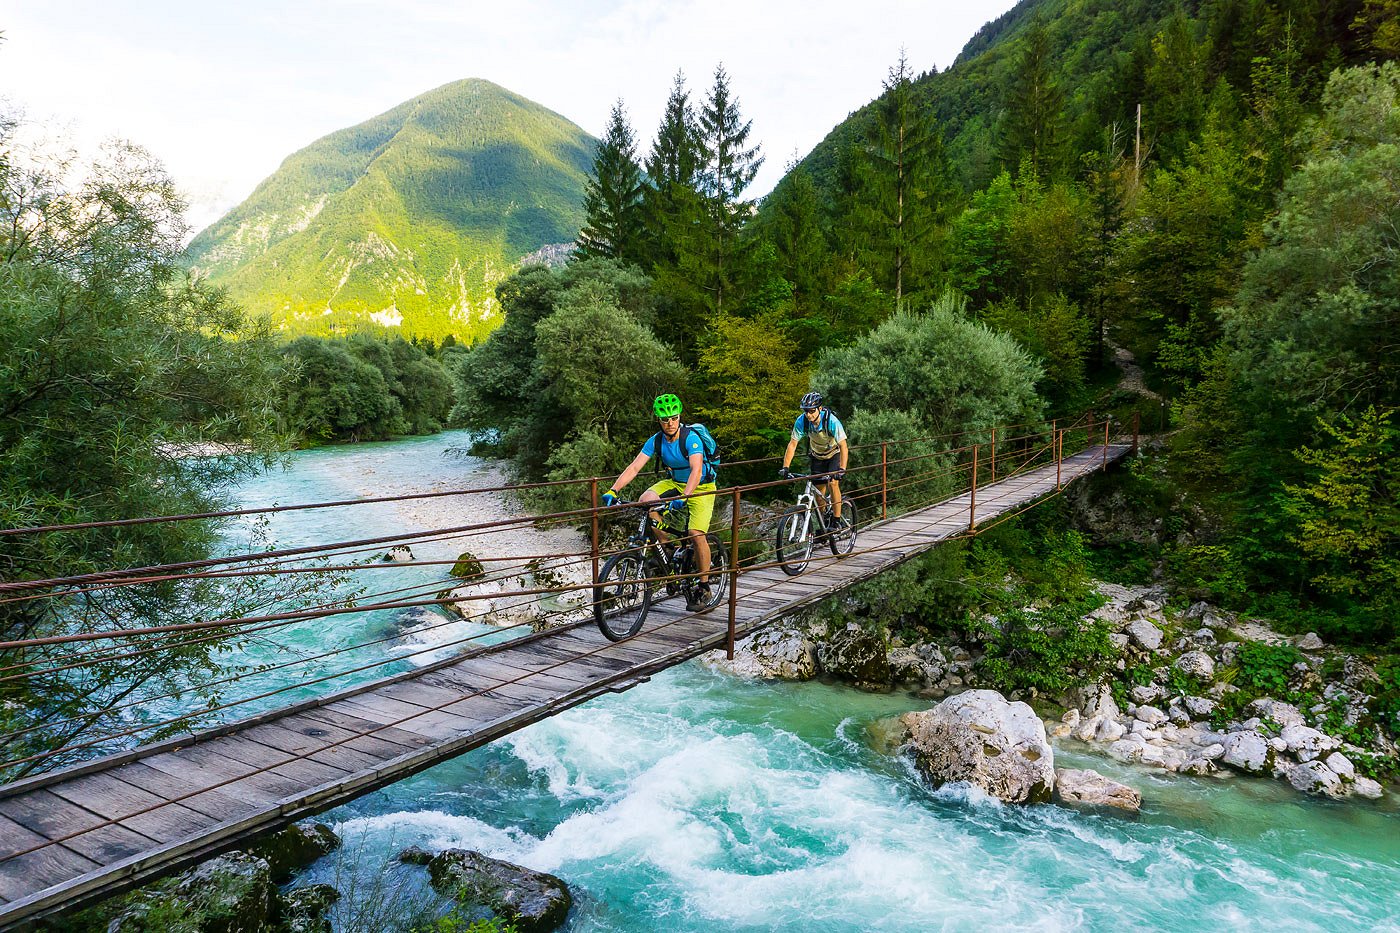 Gorska kolesarja prečkata reko Sočo po leseni brvi